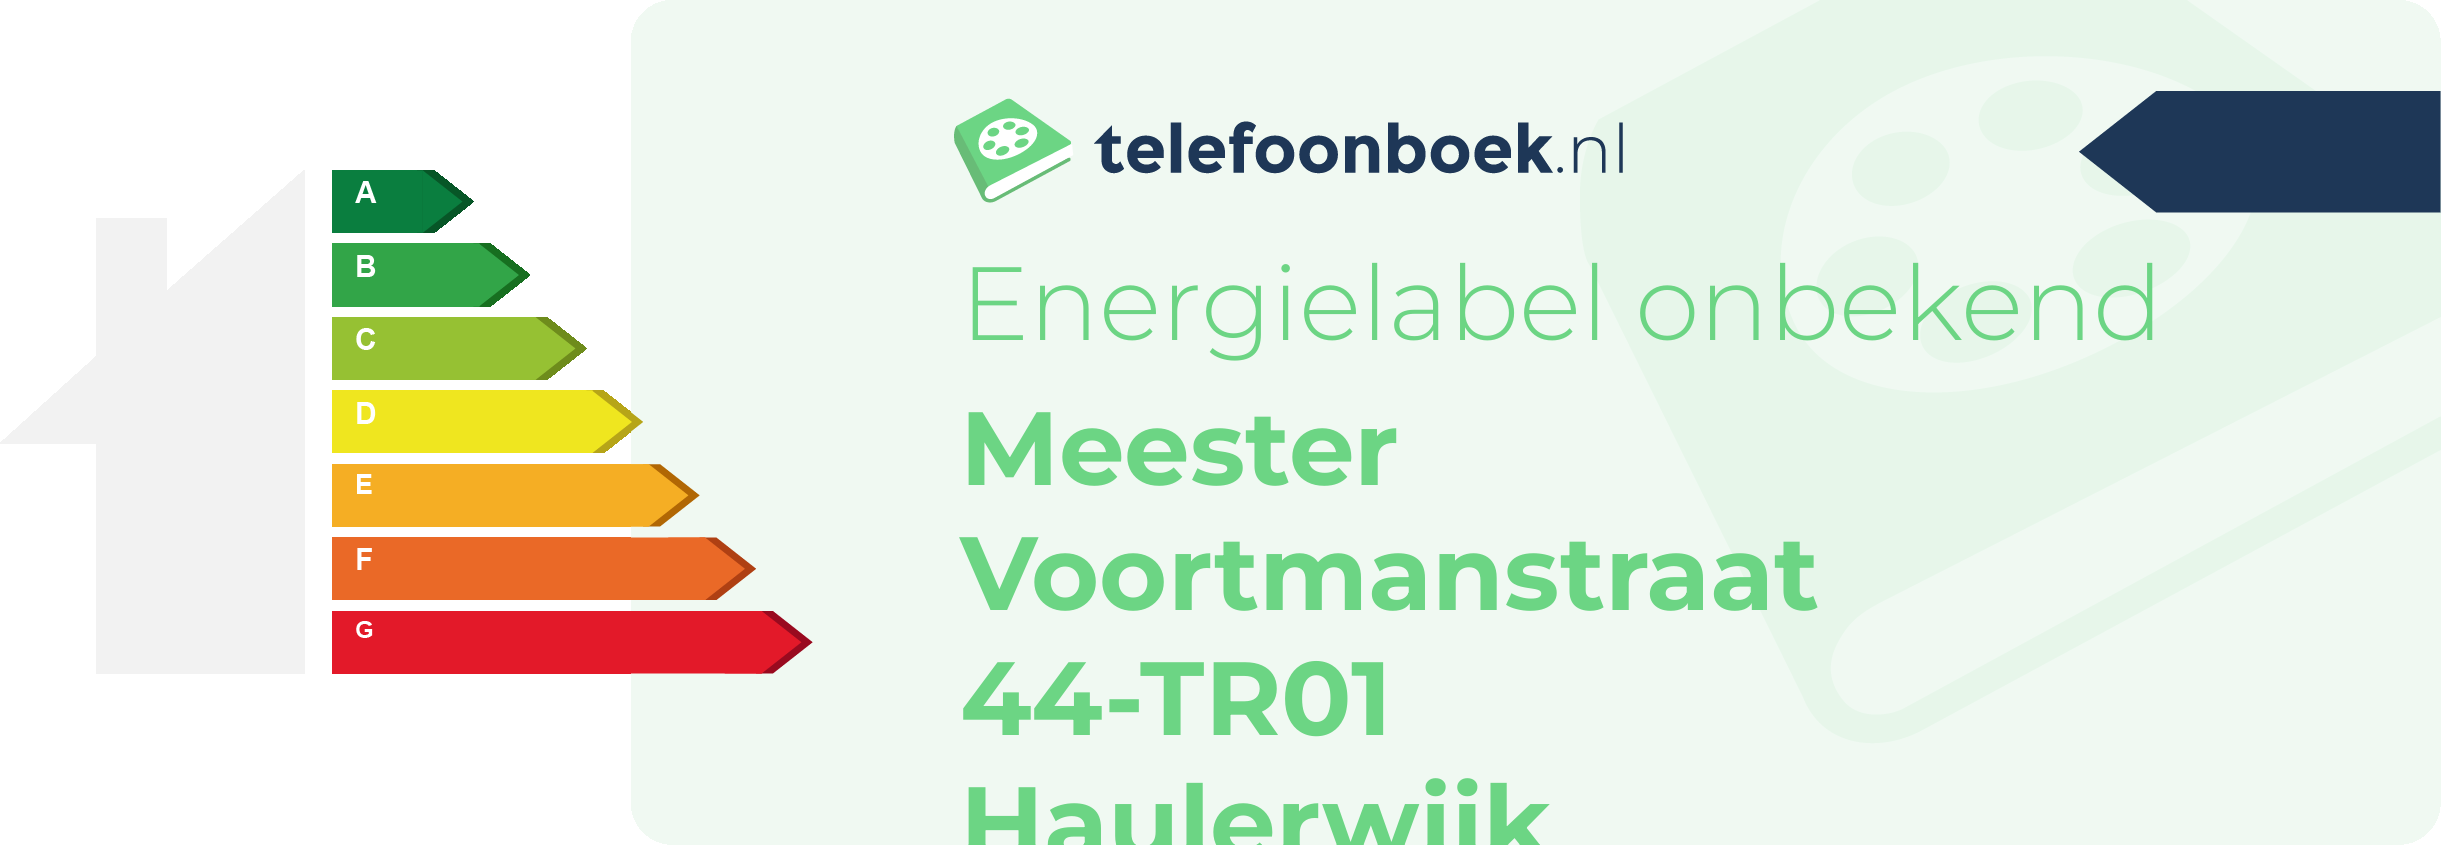 Energielabel Meester Voortmanstraat 44-TR01 Haulerwijk